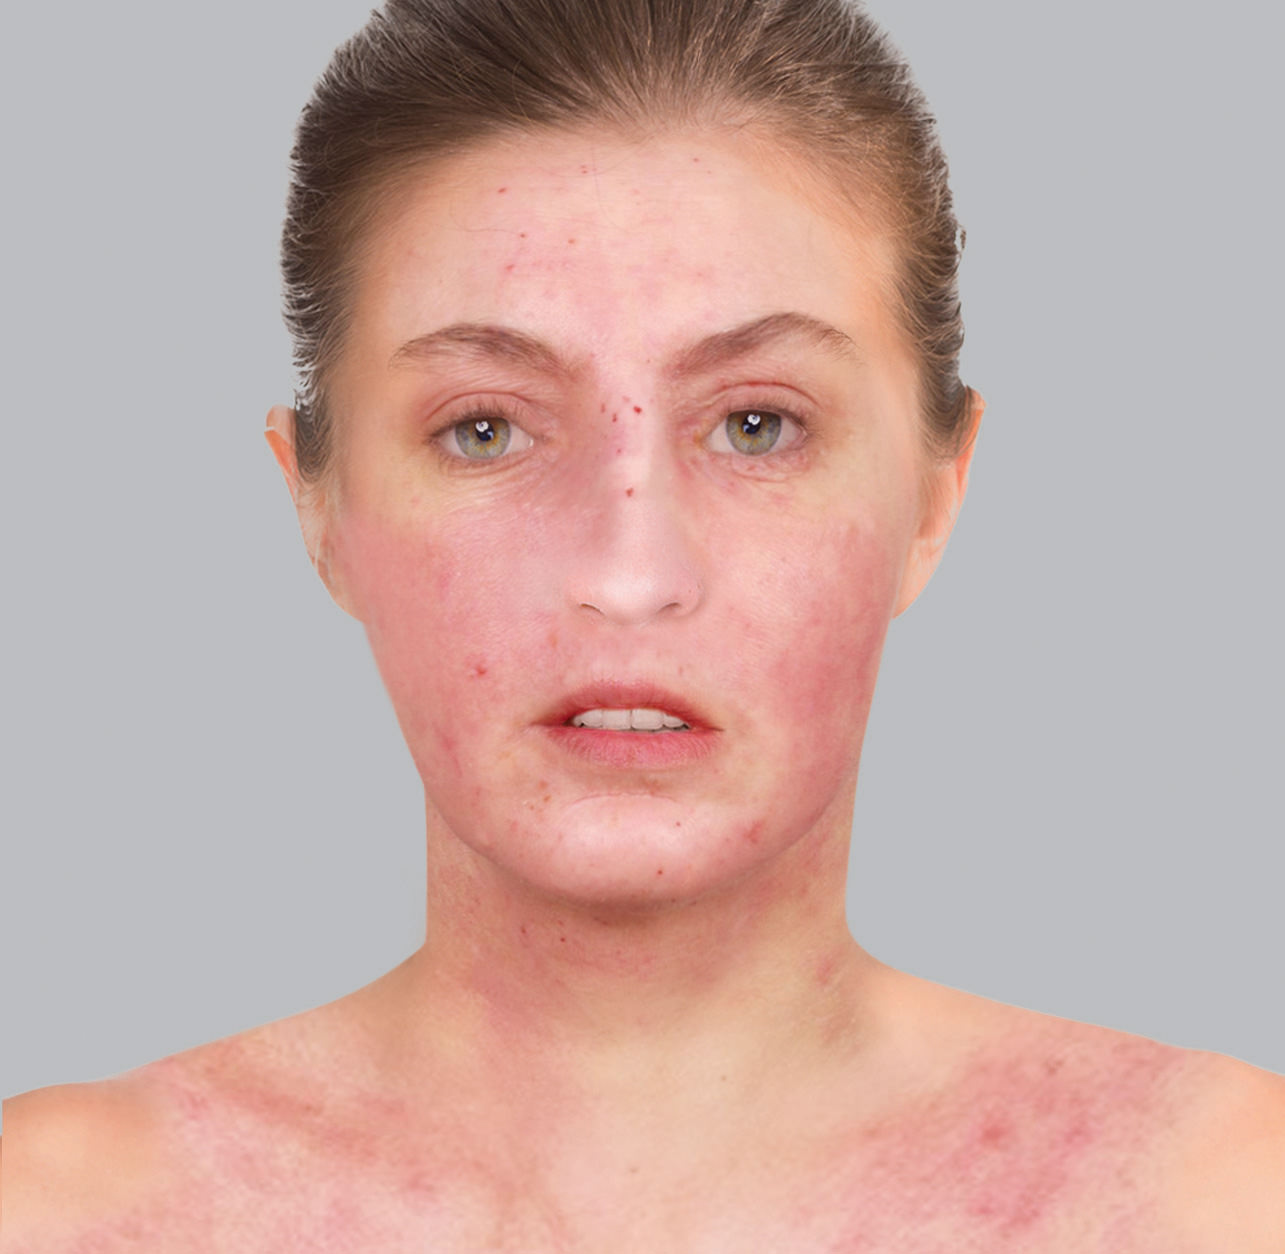 Symptome eines atopischen Ekzems: rote Flecken oder Erytheme